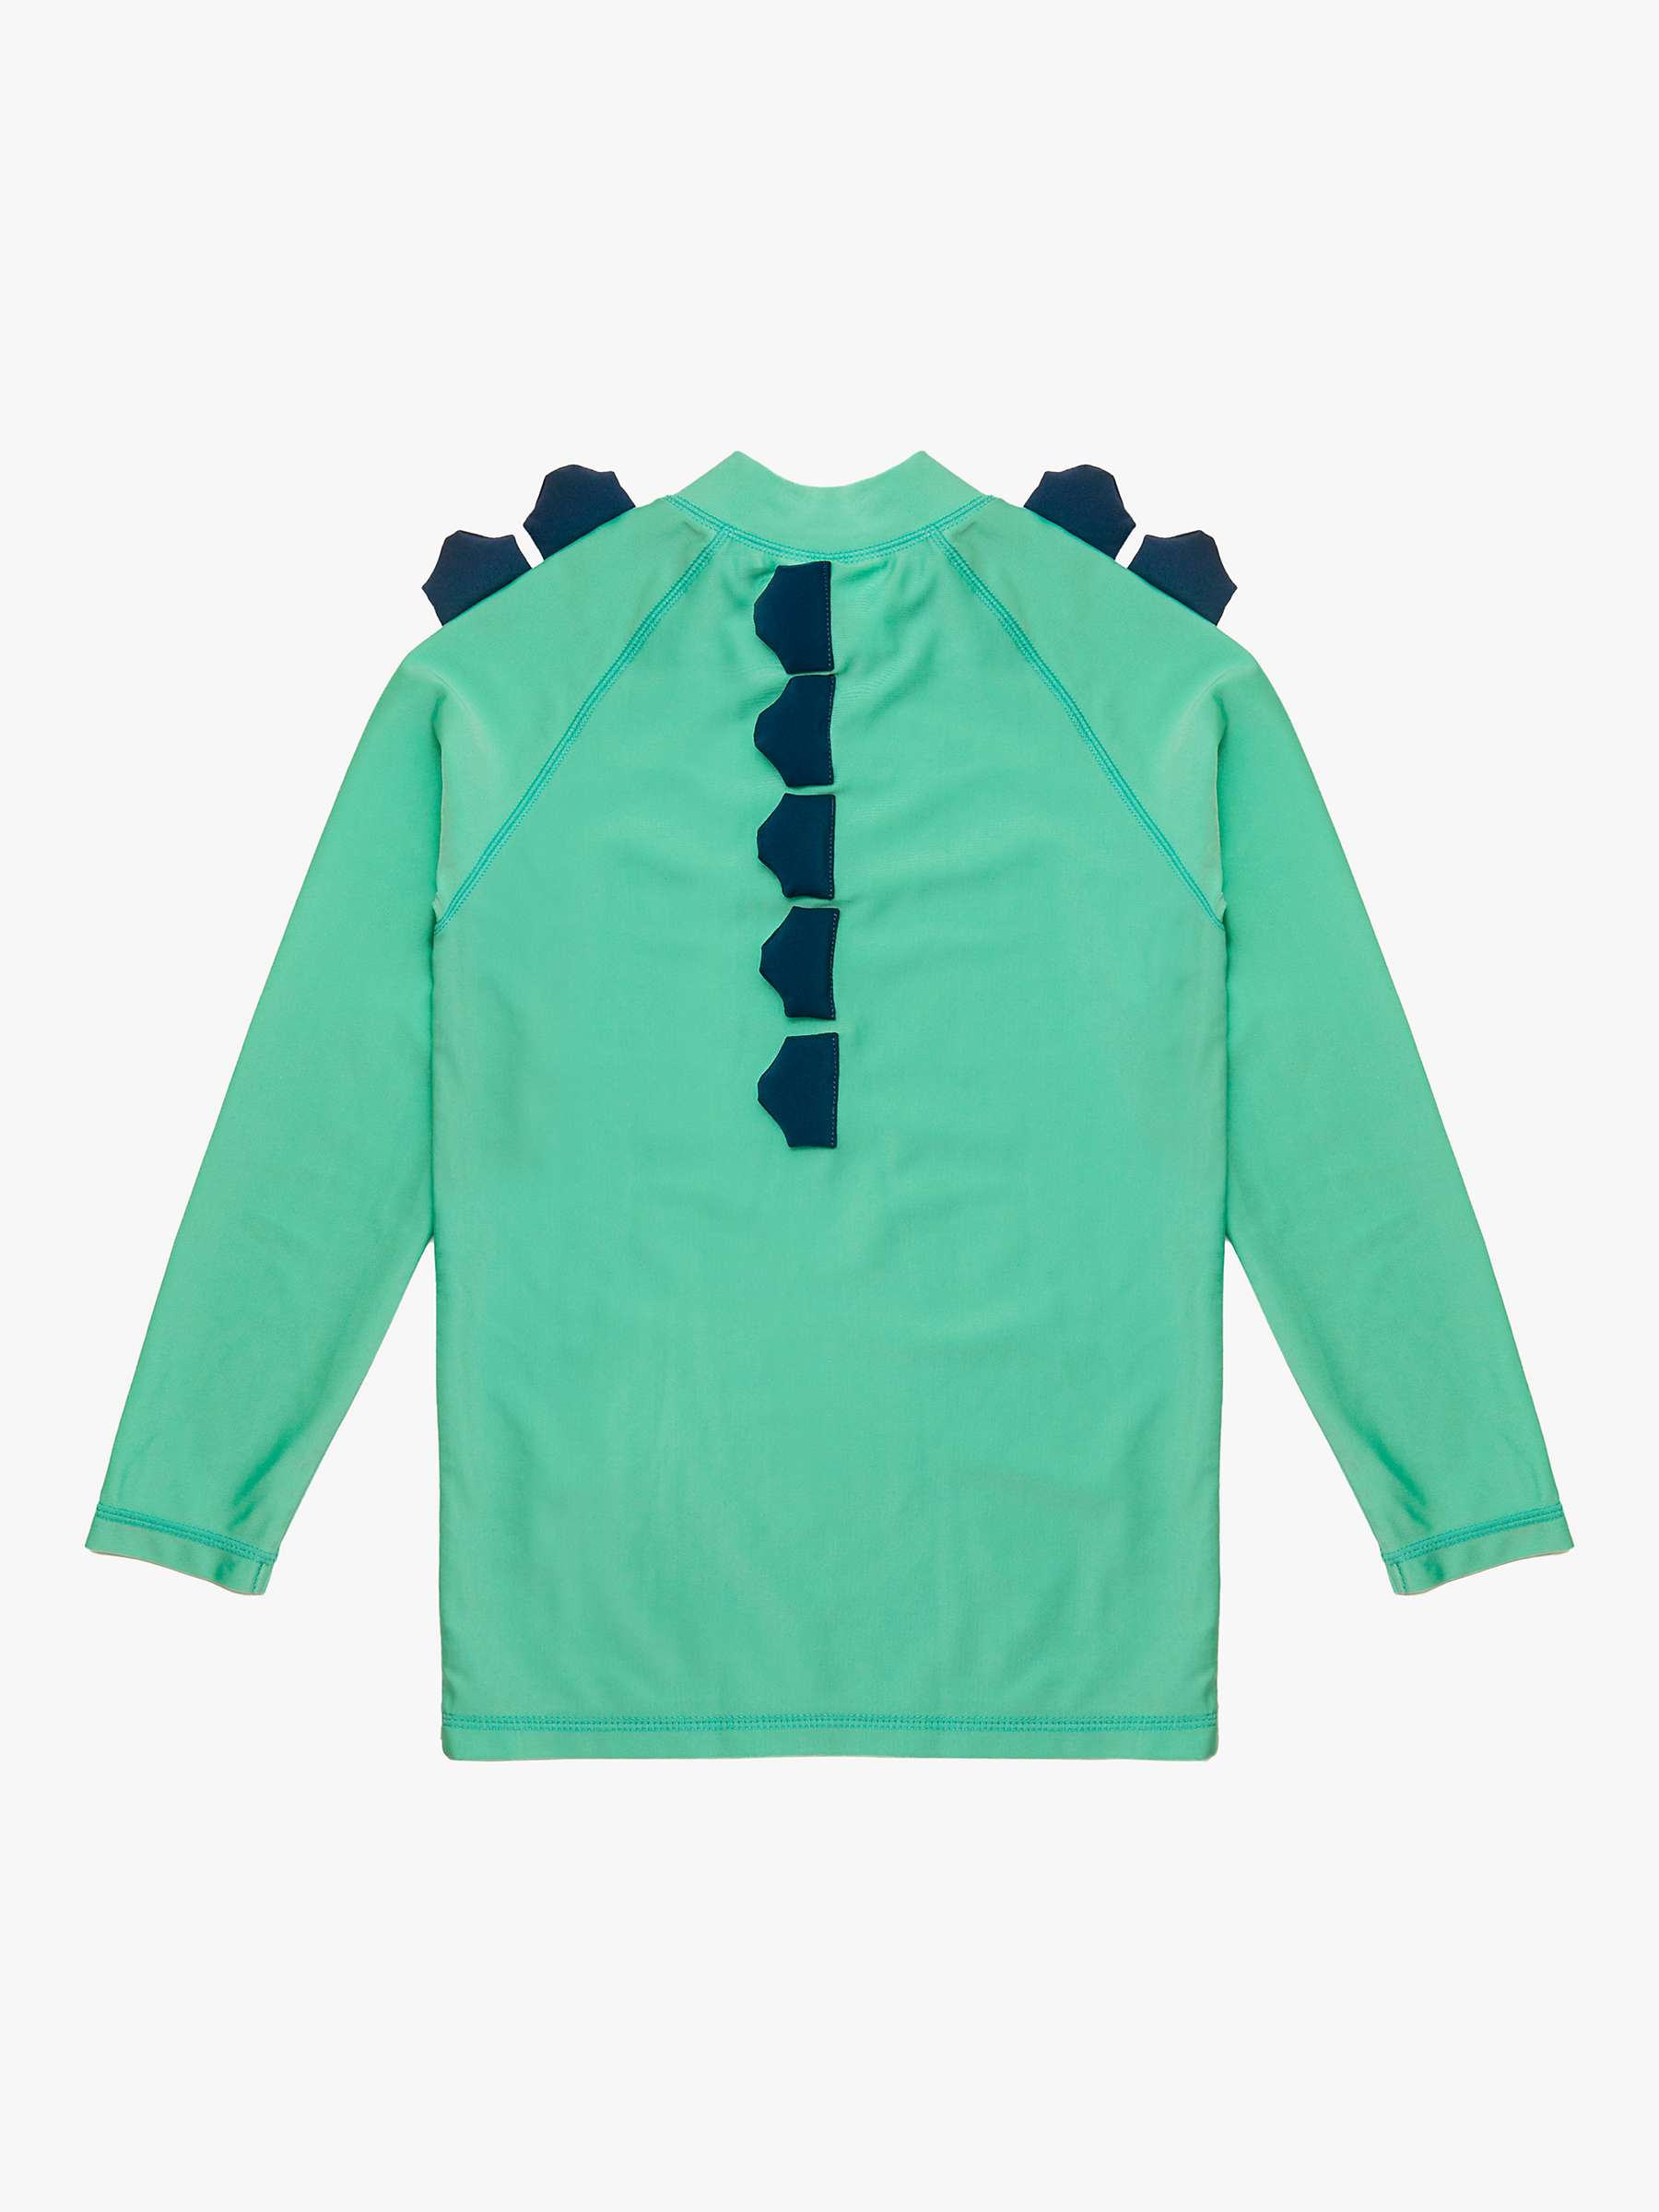 Buy Roarsome Kids' Spike Long Sleeve Rash Vest, Light Green Online at johnlewis.com